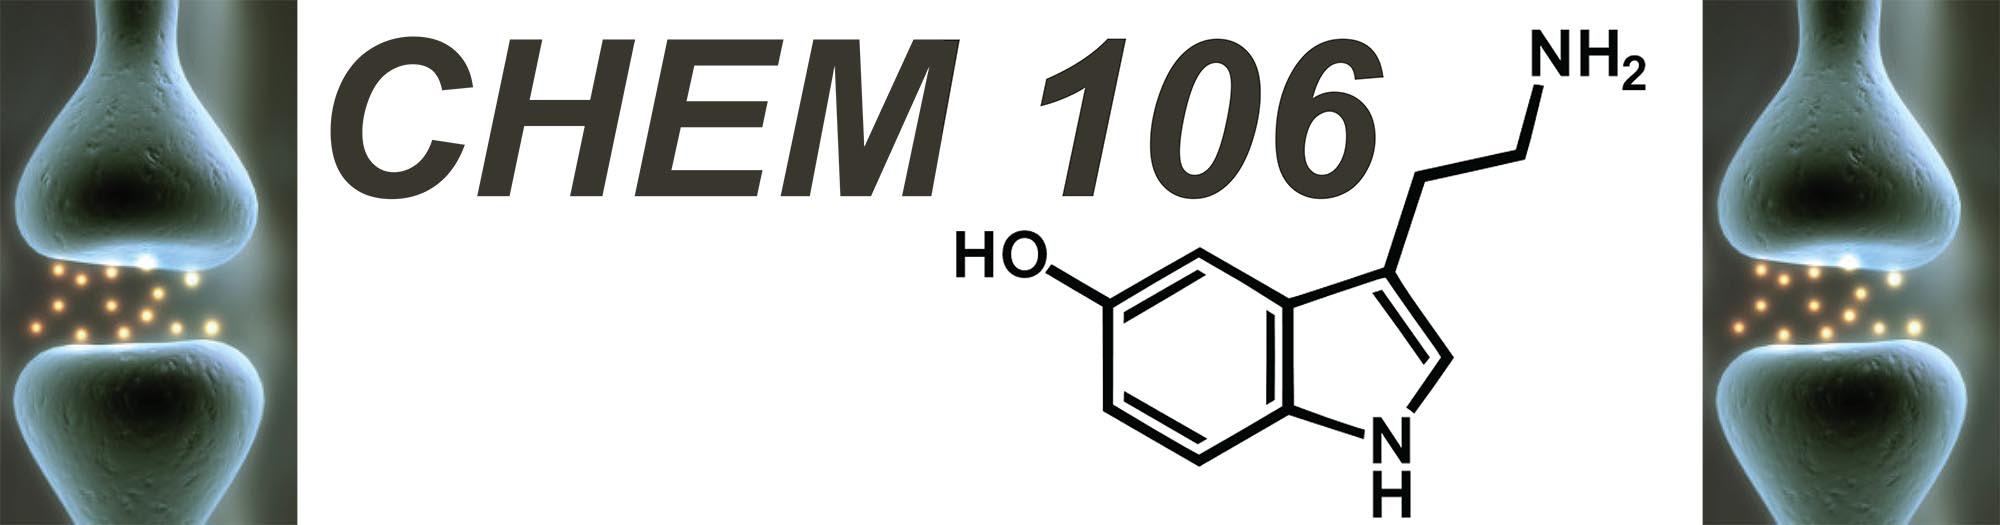 CHEM106